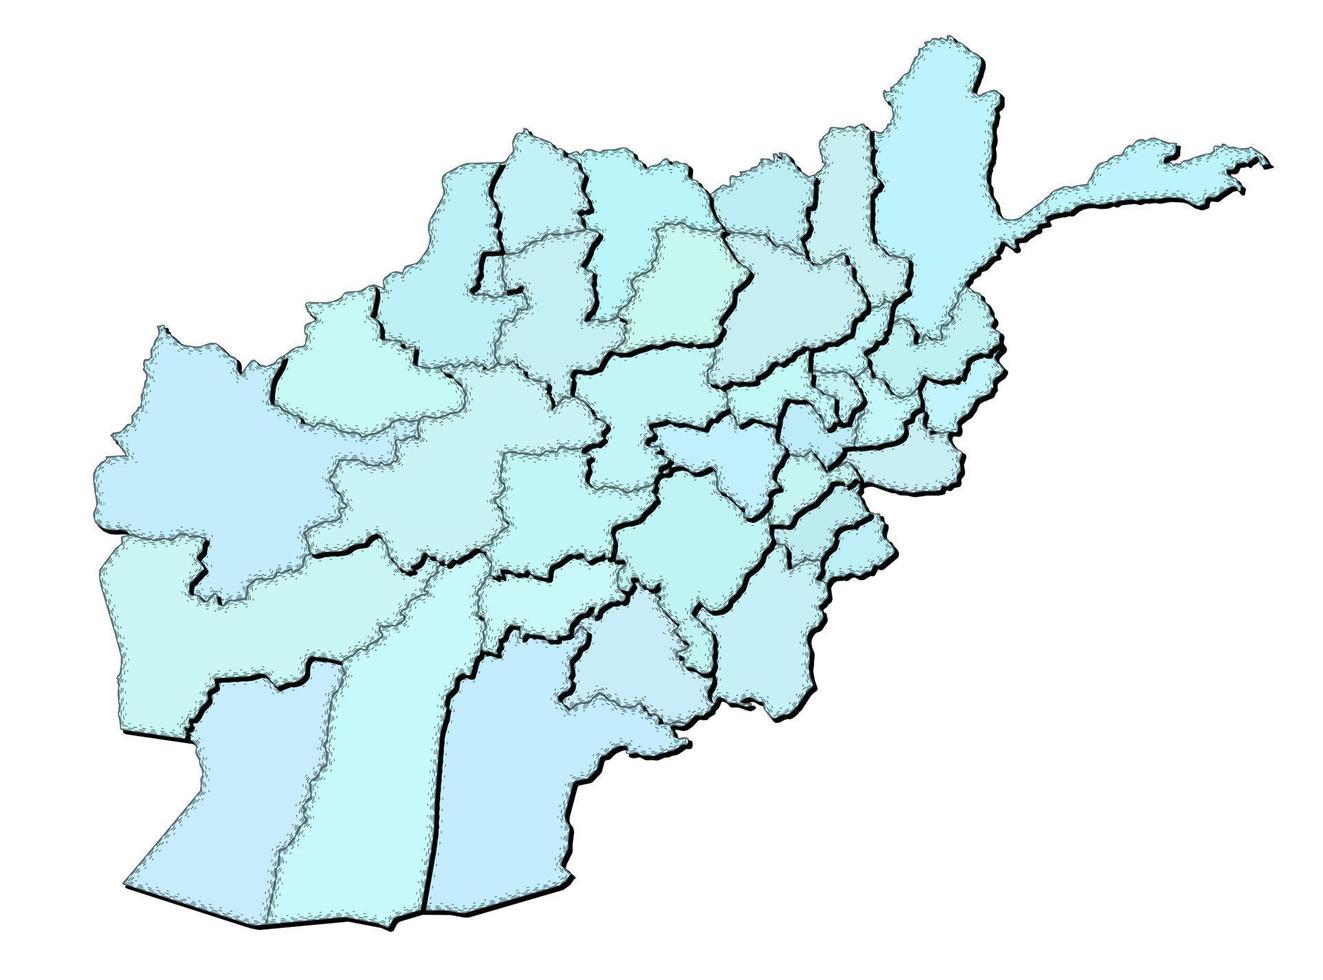 Karta av afghanistan med stater isolerat vektor